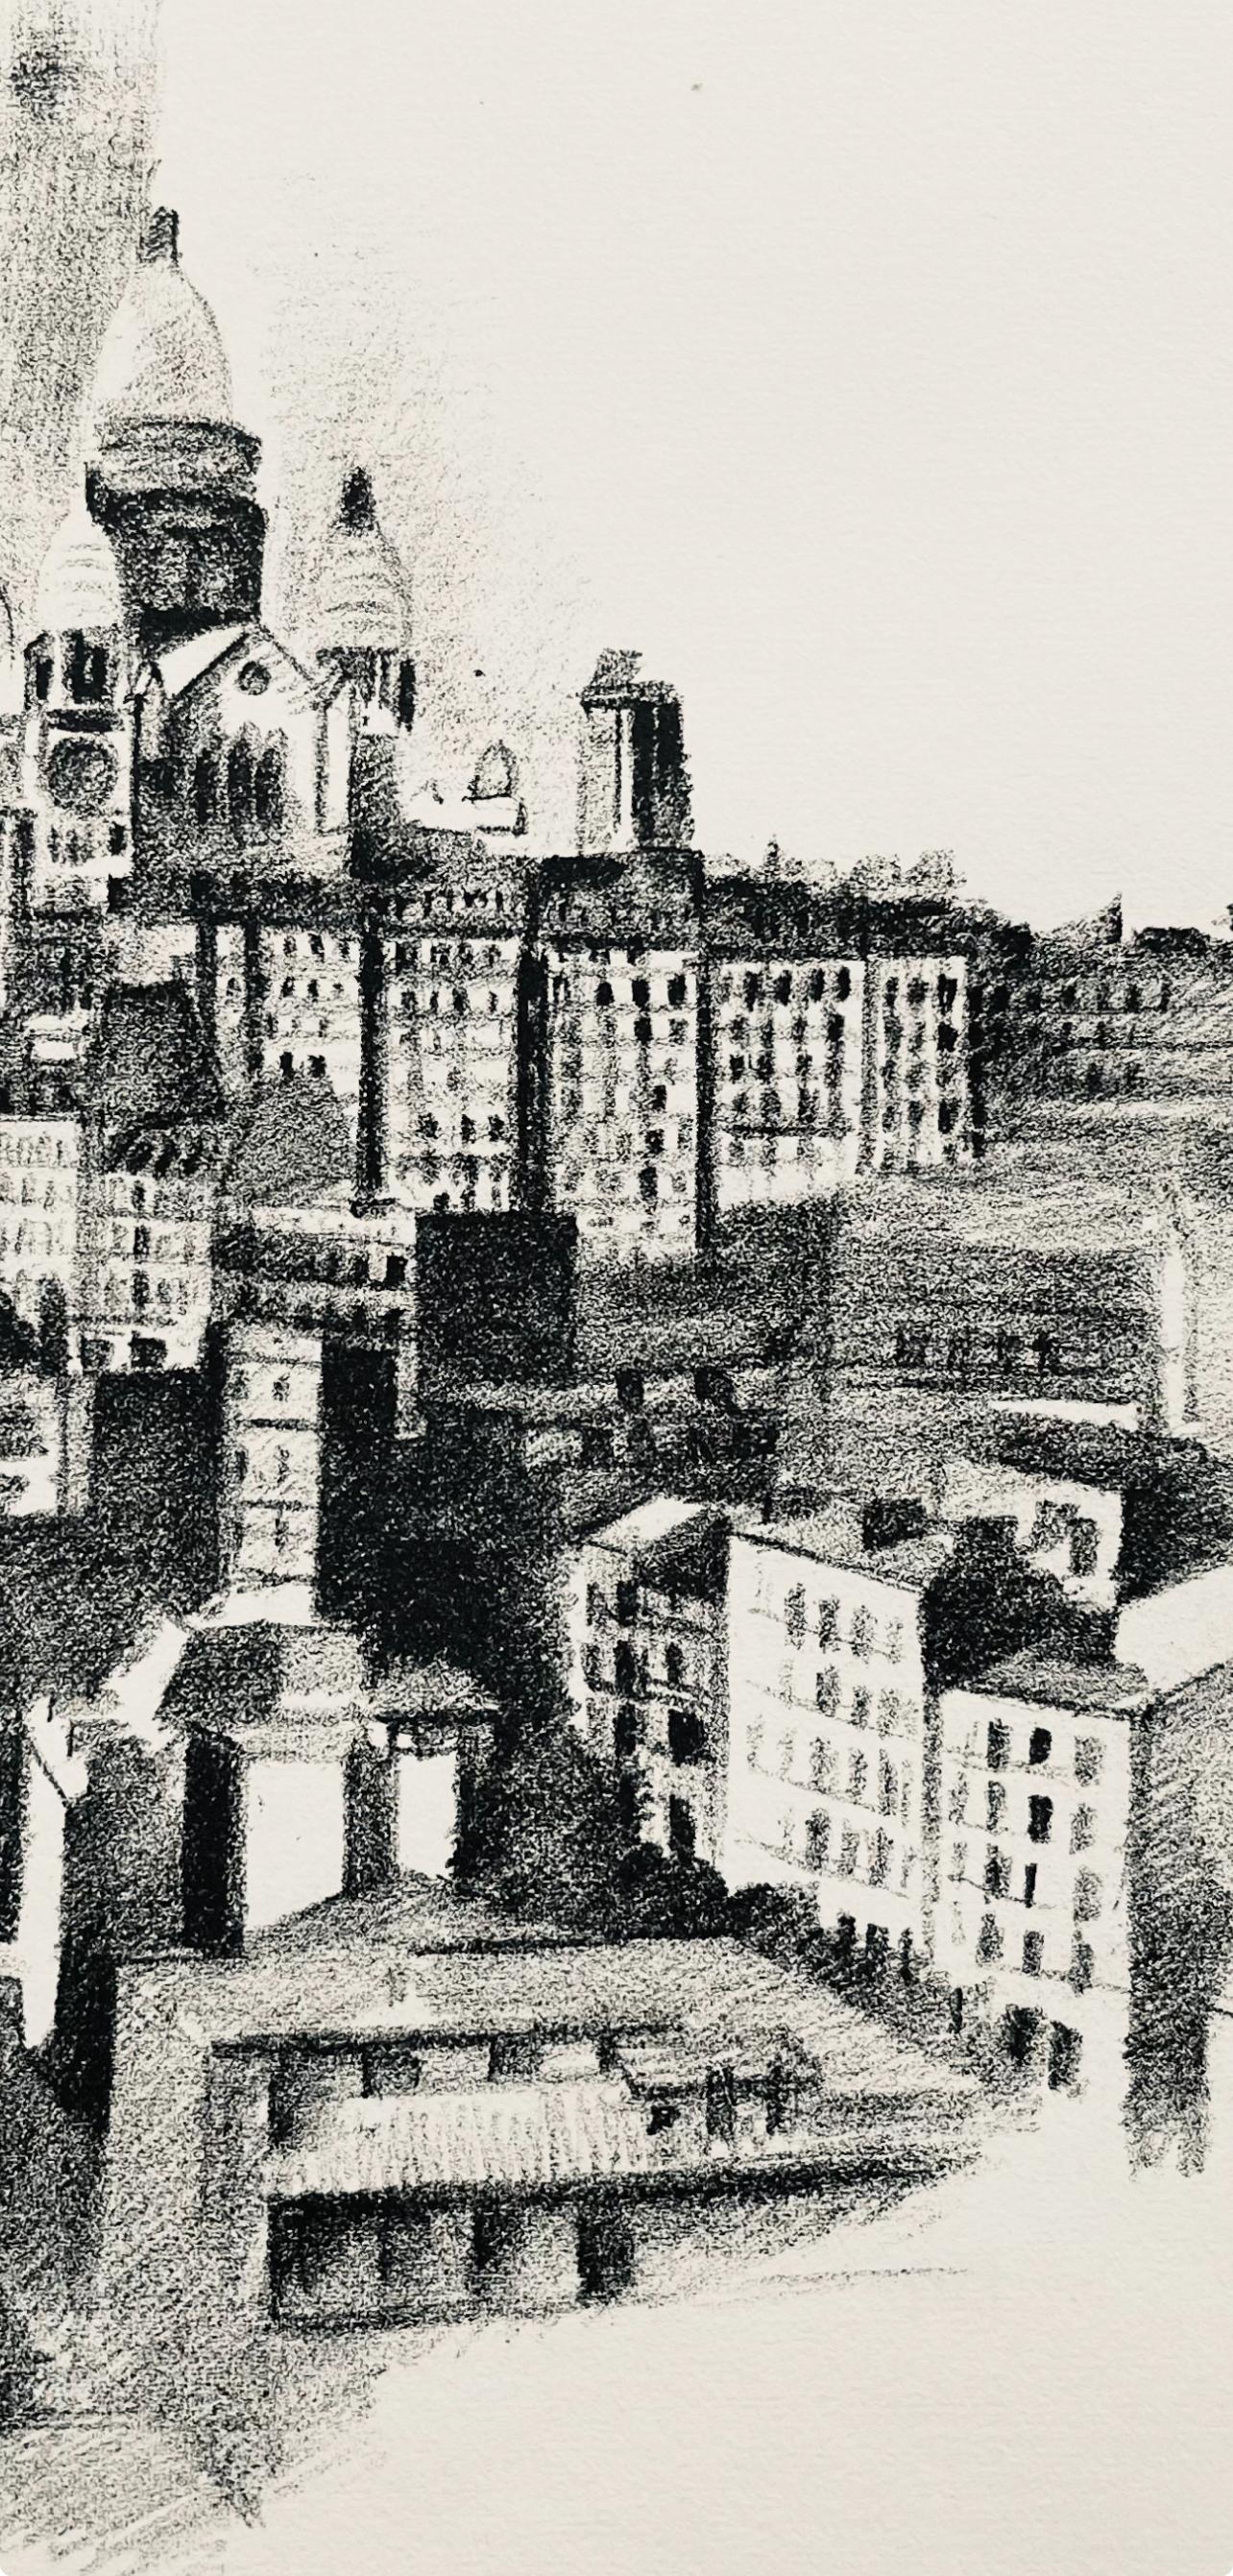 Delaunay, La butte Montmartre et le Sacre-Cœur (H 720-728), Allo! Paris! (after) - Modern Print by Robert Delaunay